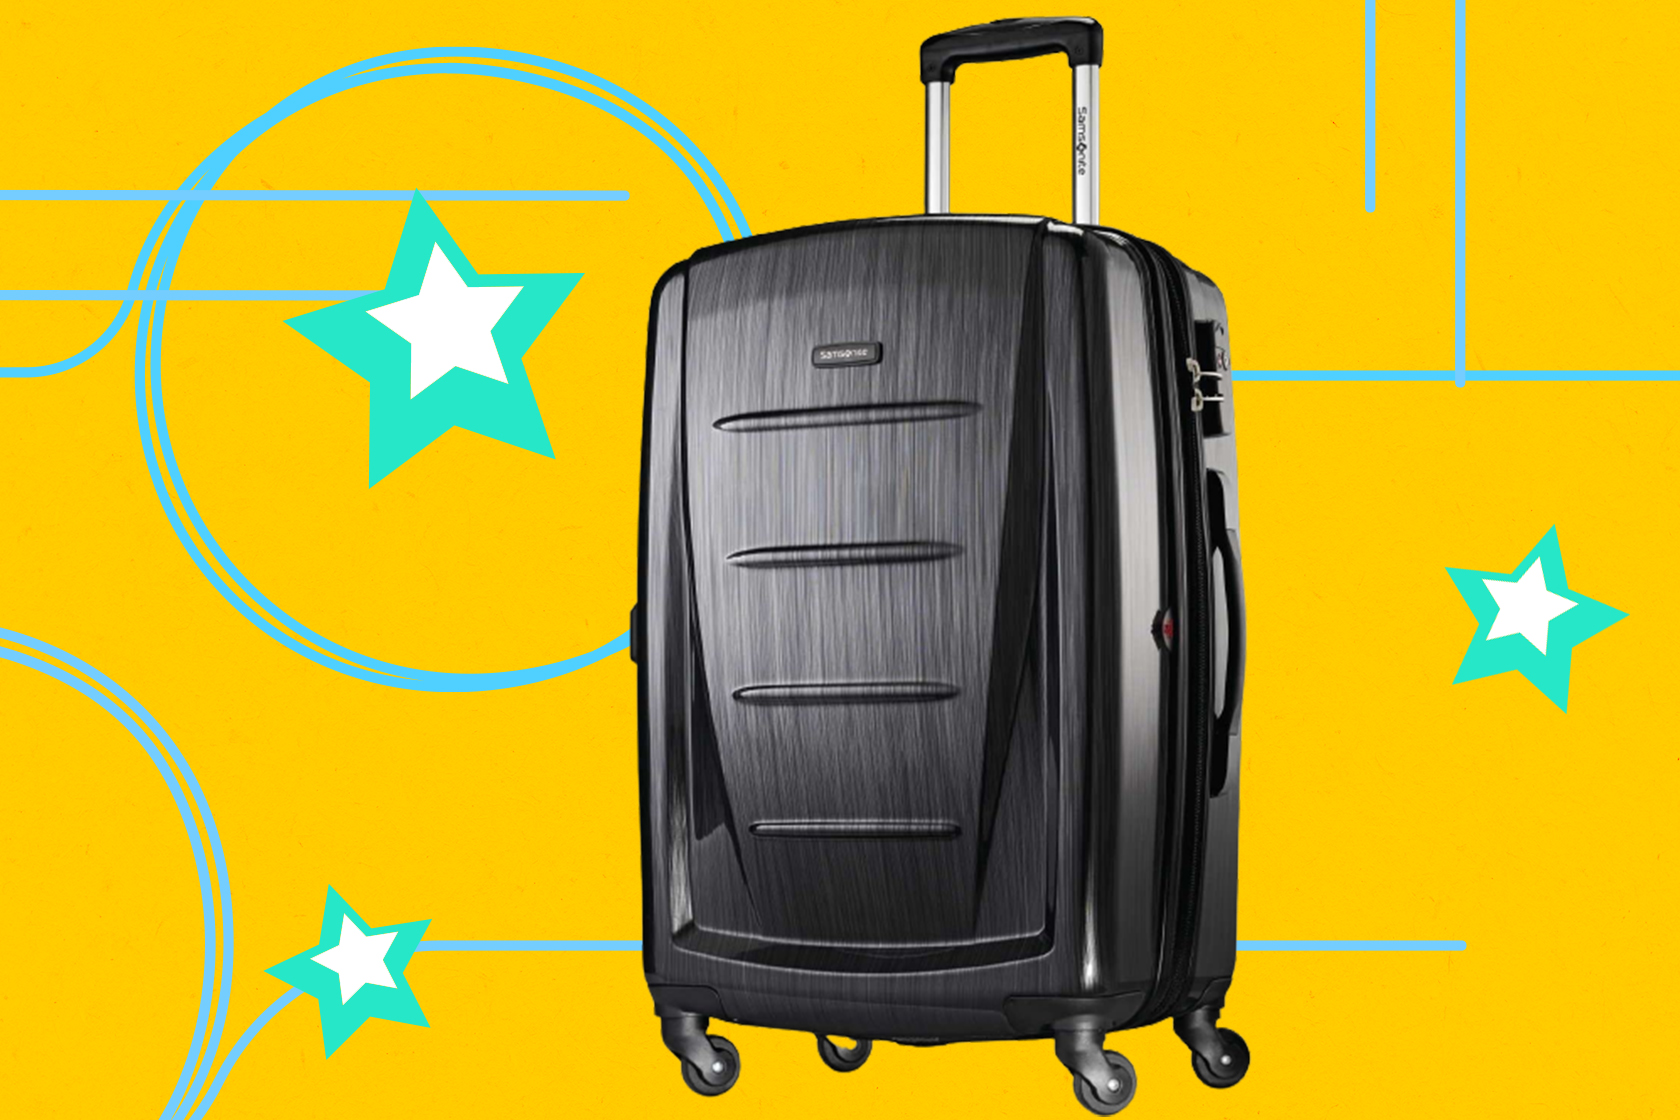 Samsonite luggage deals: 40% off hardsides suitcase on Amazon